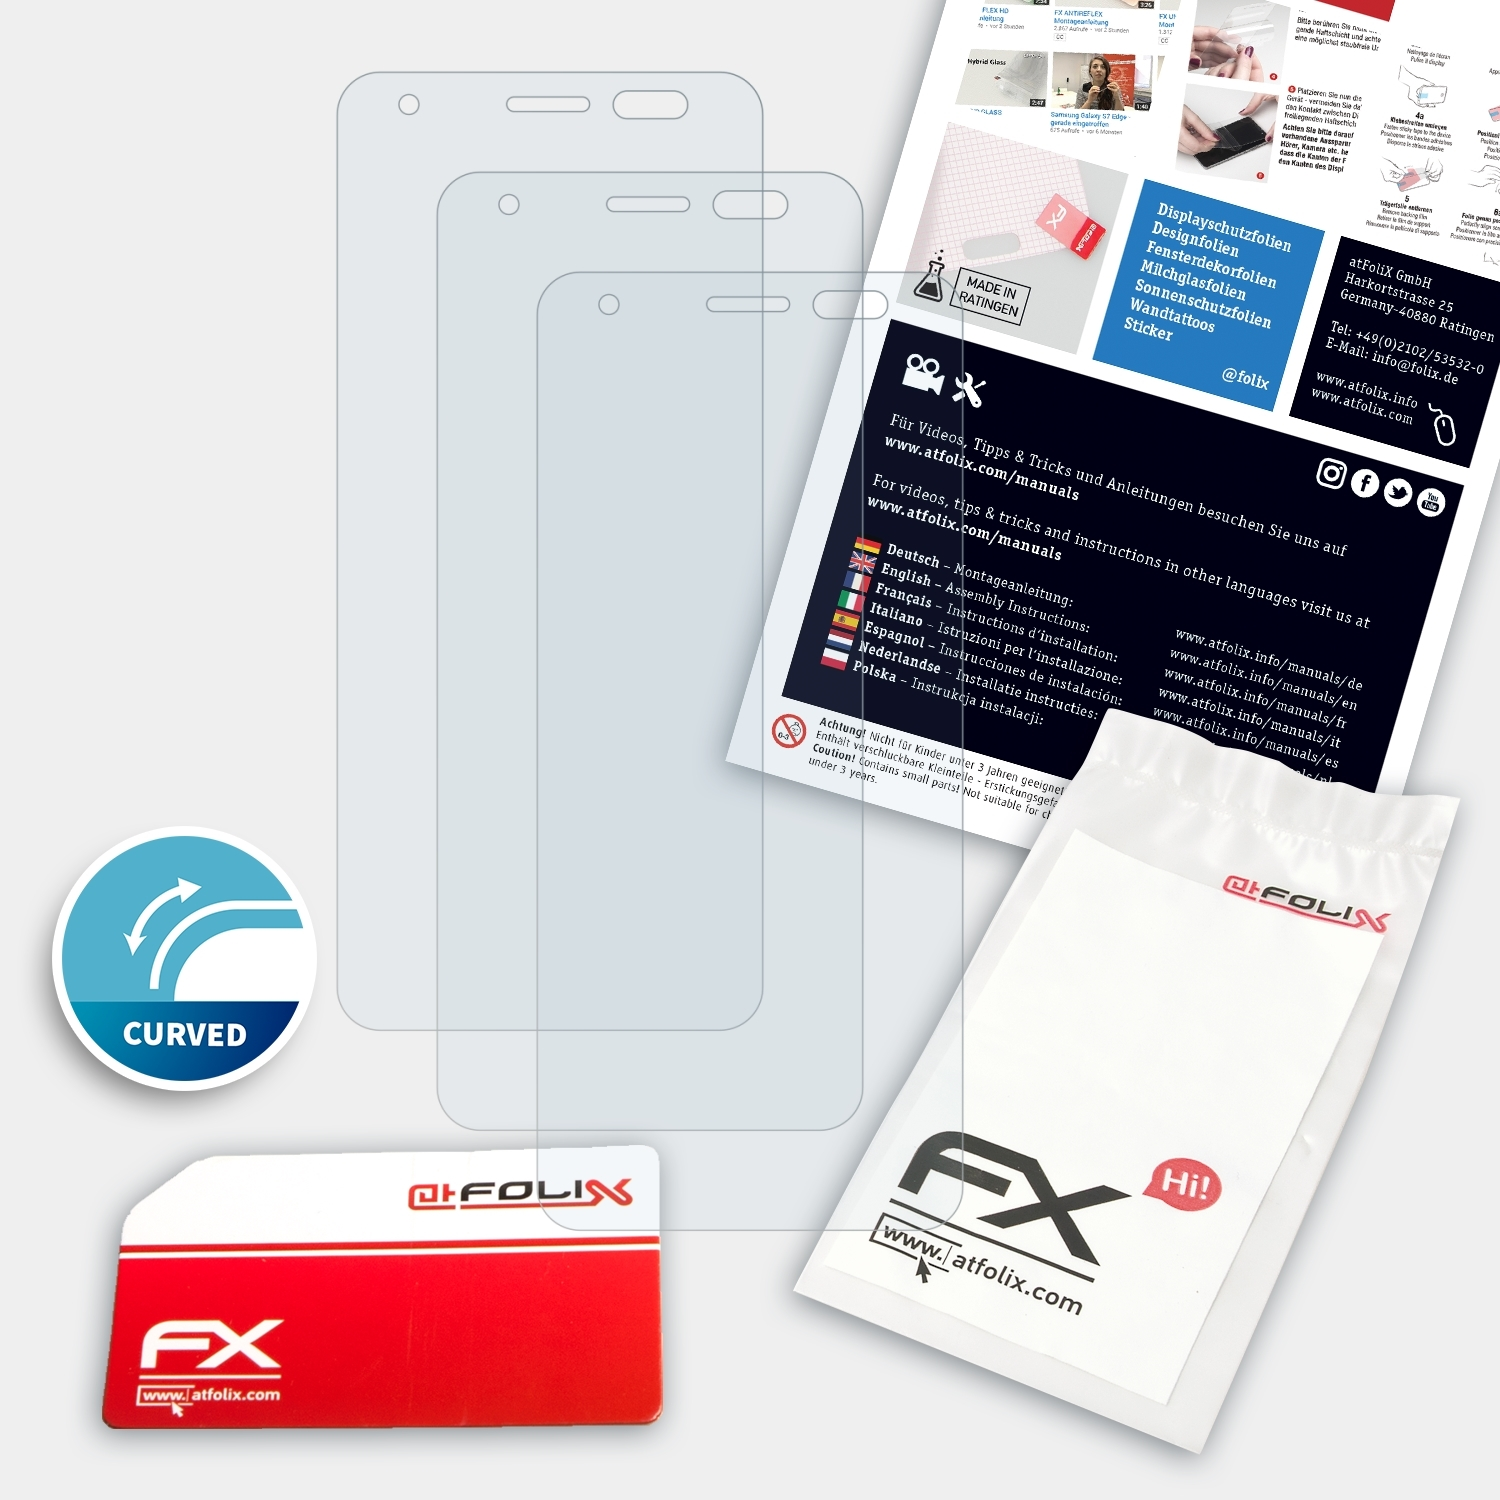 Displayschutz(für Power Energizer FX-ActiFleX Max 3x P490) ATFOLIX